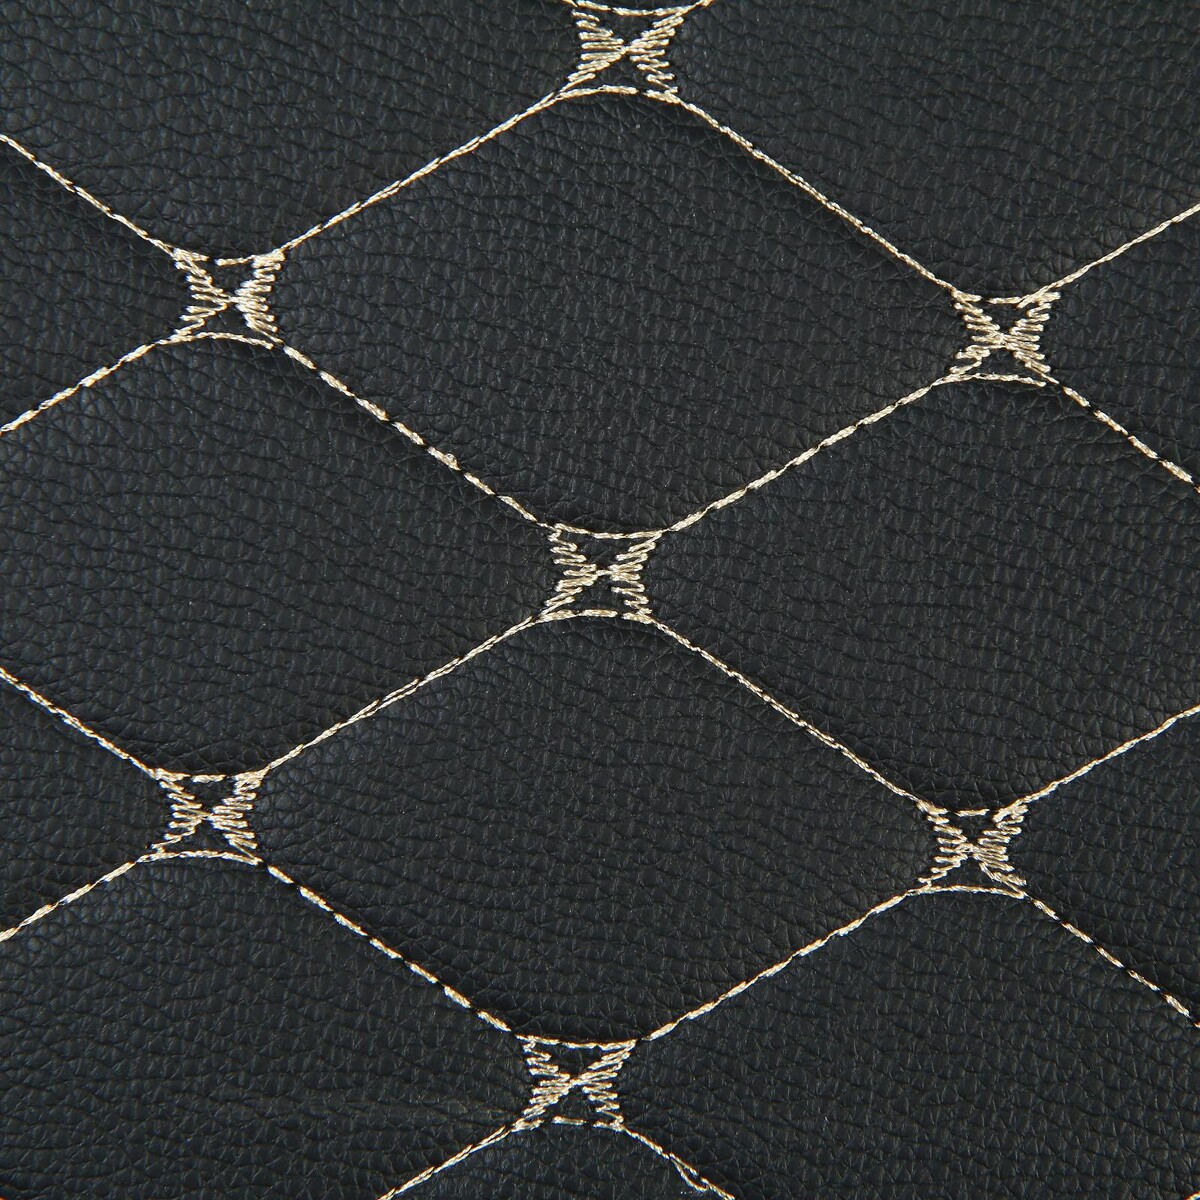 фото Органайзер саквояж в багажник автомобиля, 32×32×30 см, экокожа, черный с белой обшивкой no brand